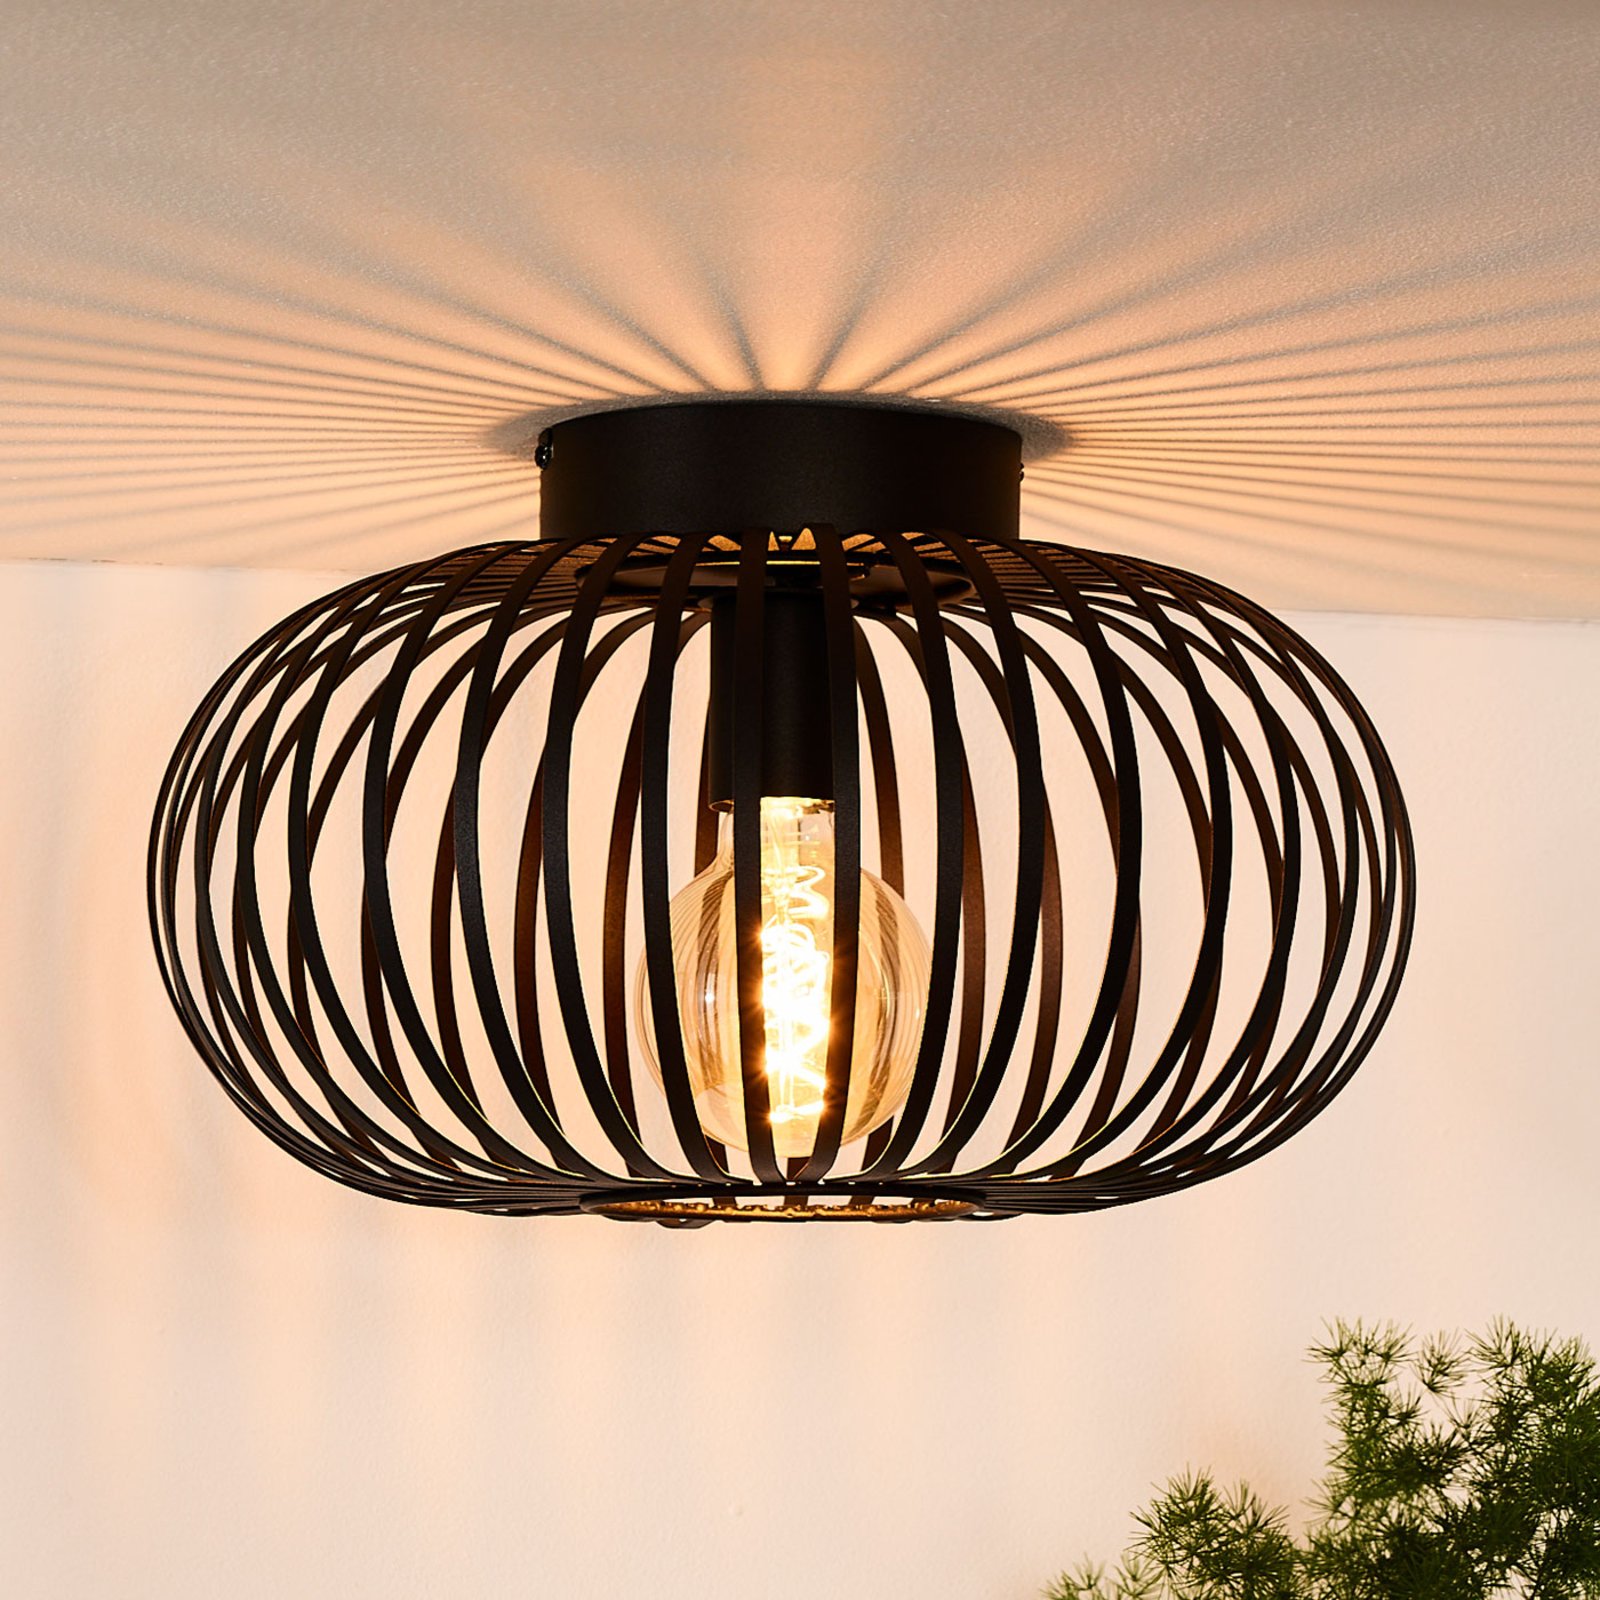 Manuela cage ceiling light in black, 40 cm